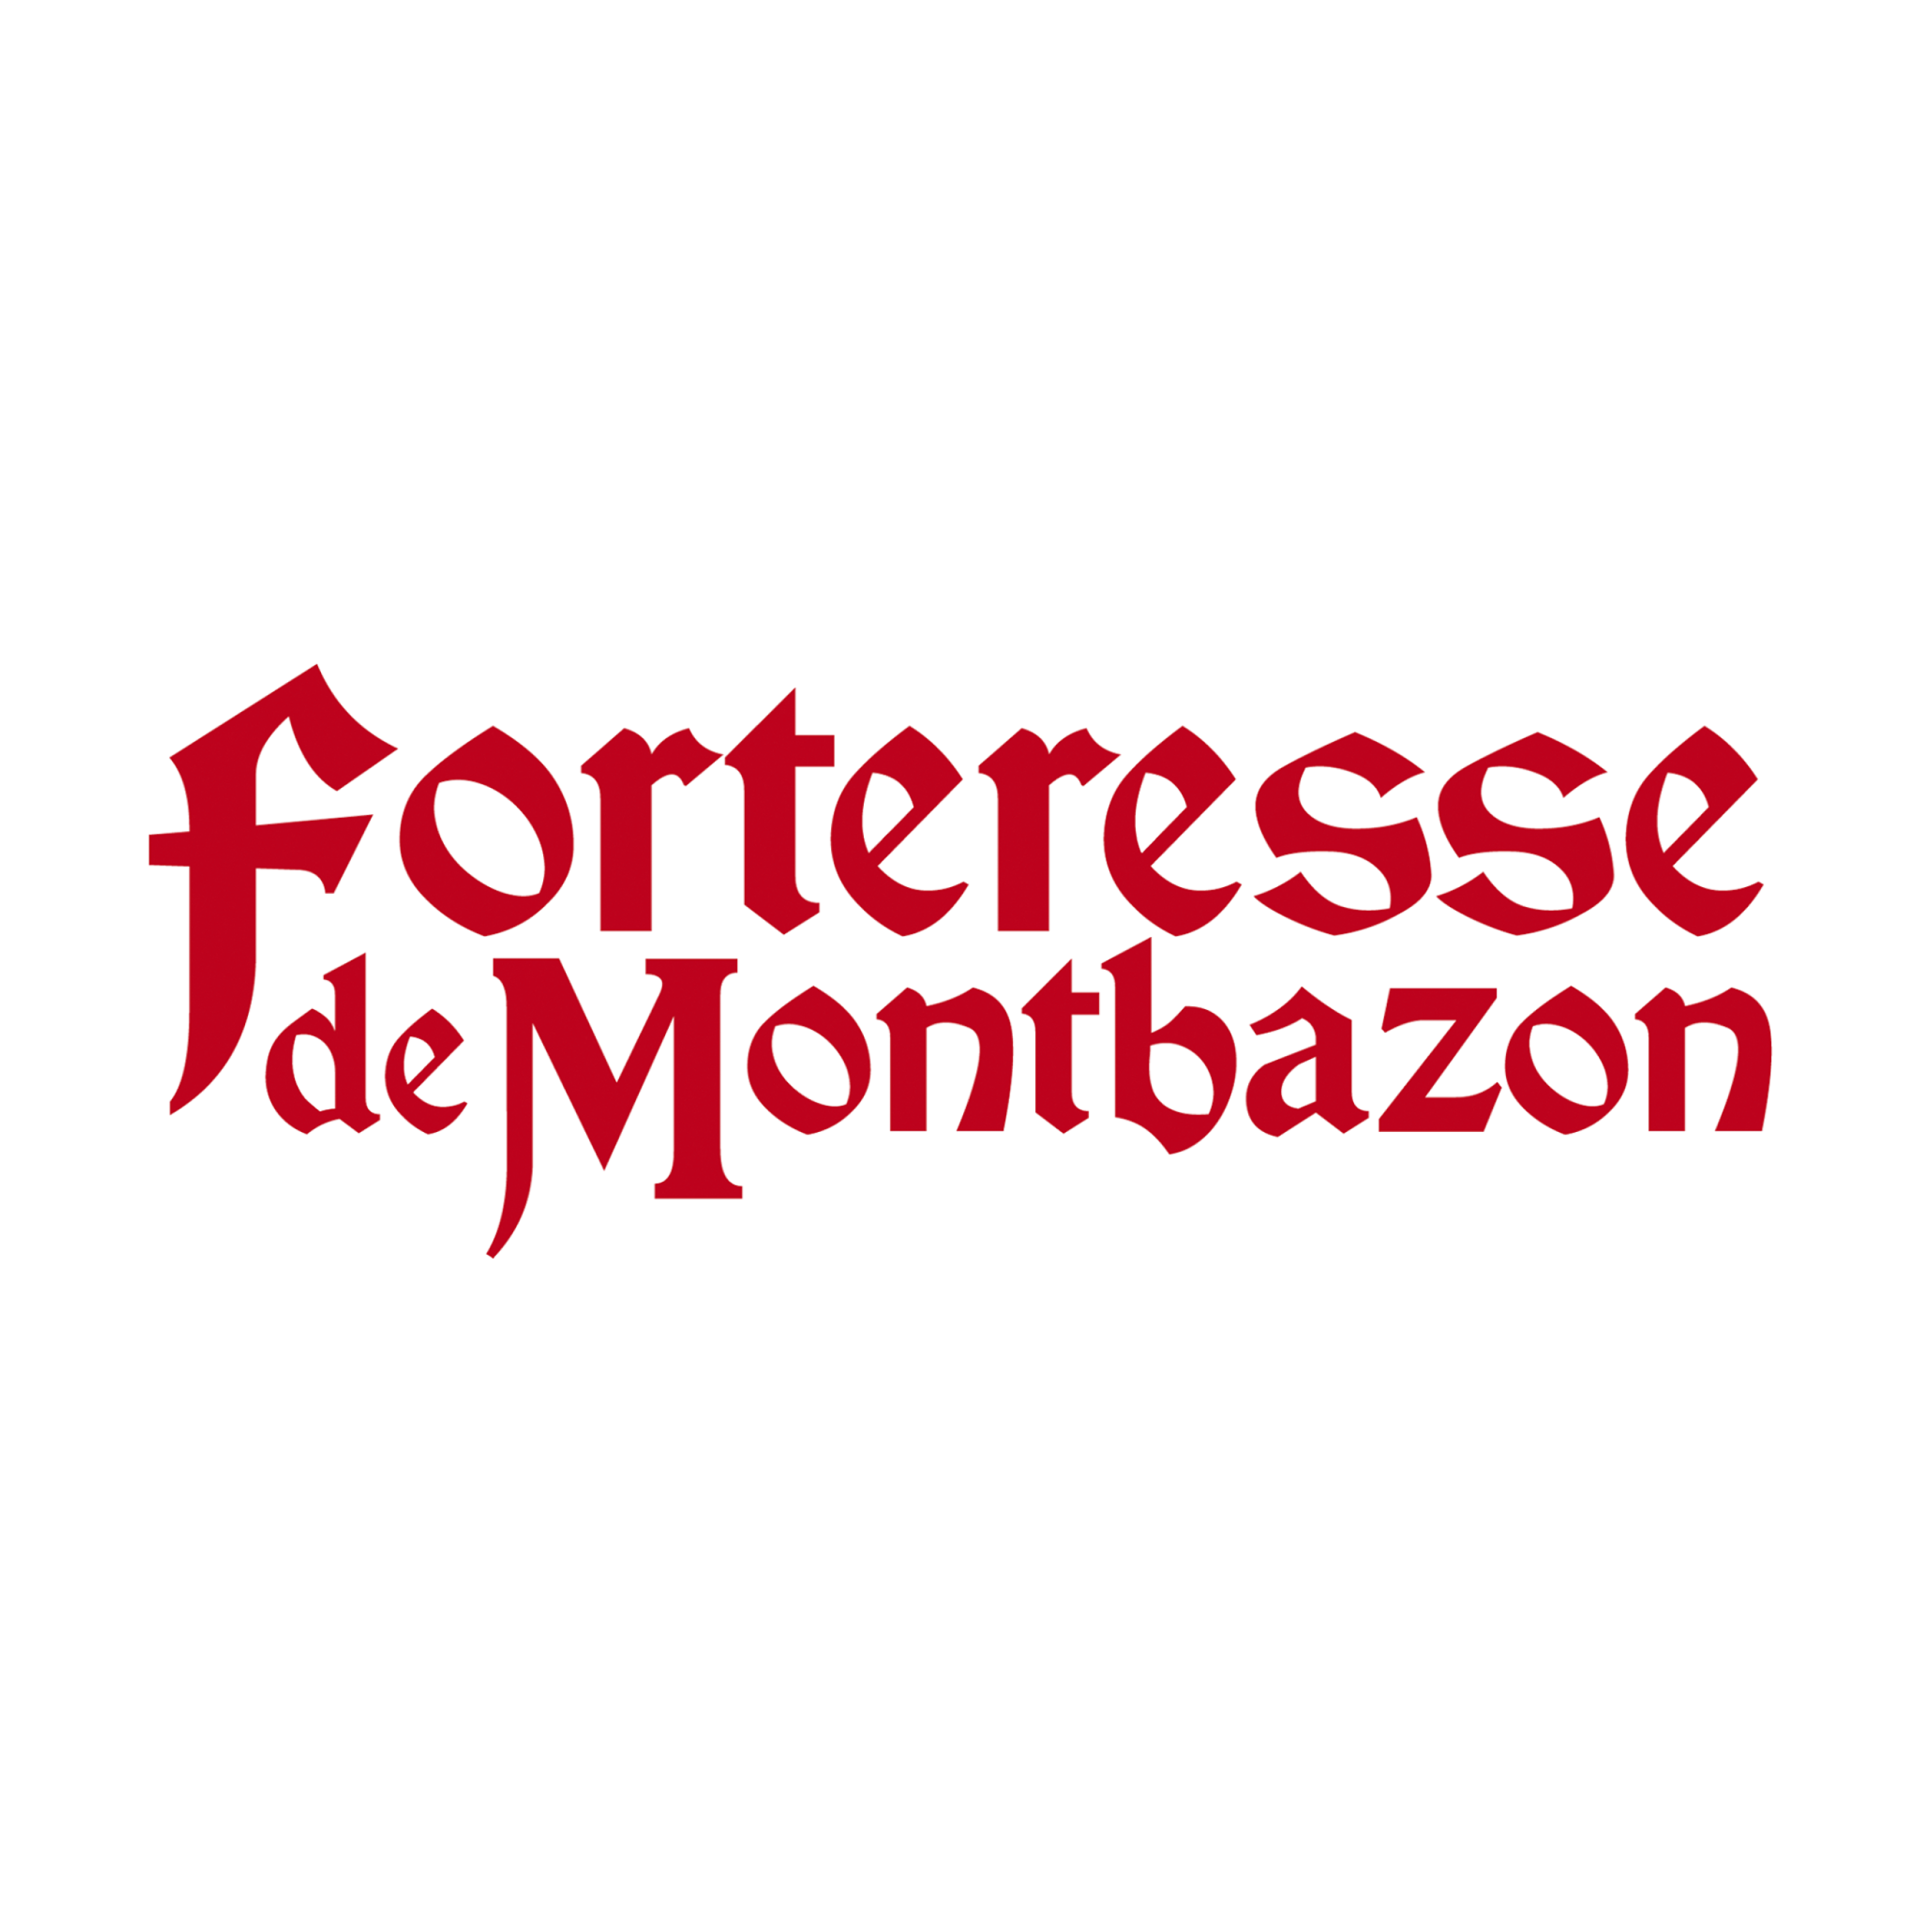 logo_forteresse_de_montbazon.png